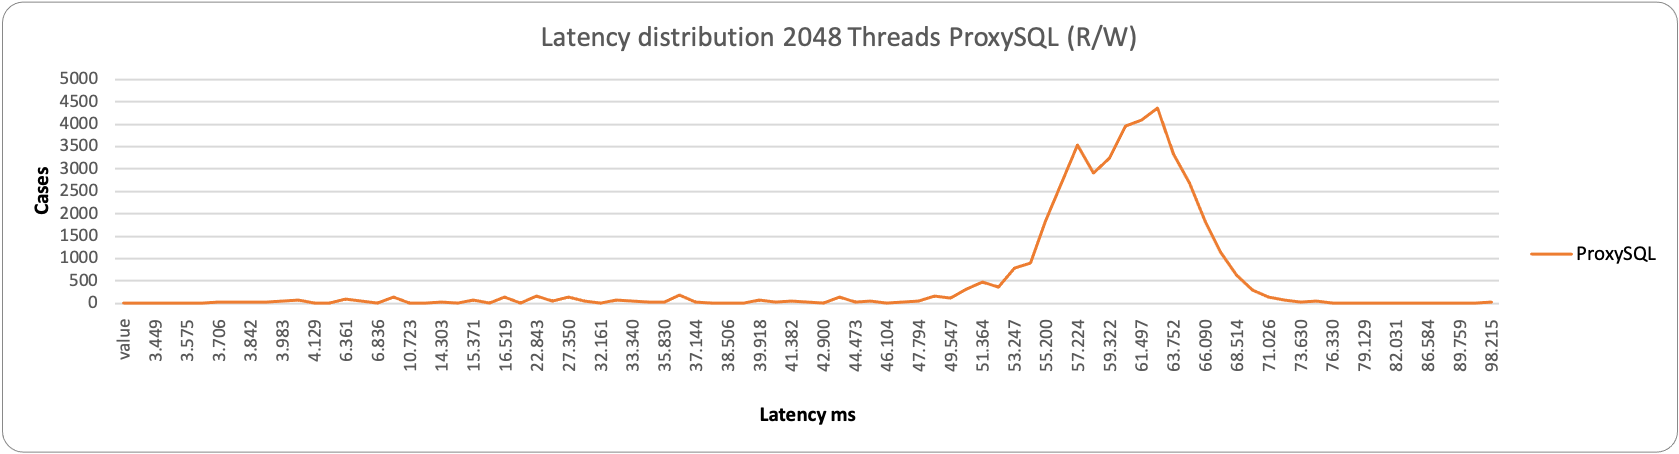 latency2048 1node proxy rw